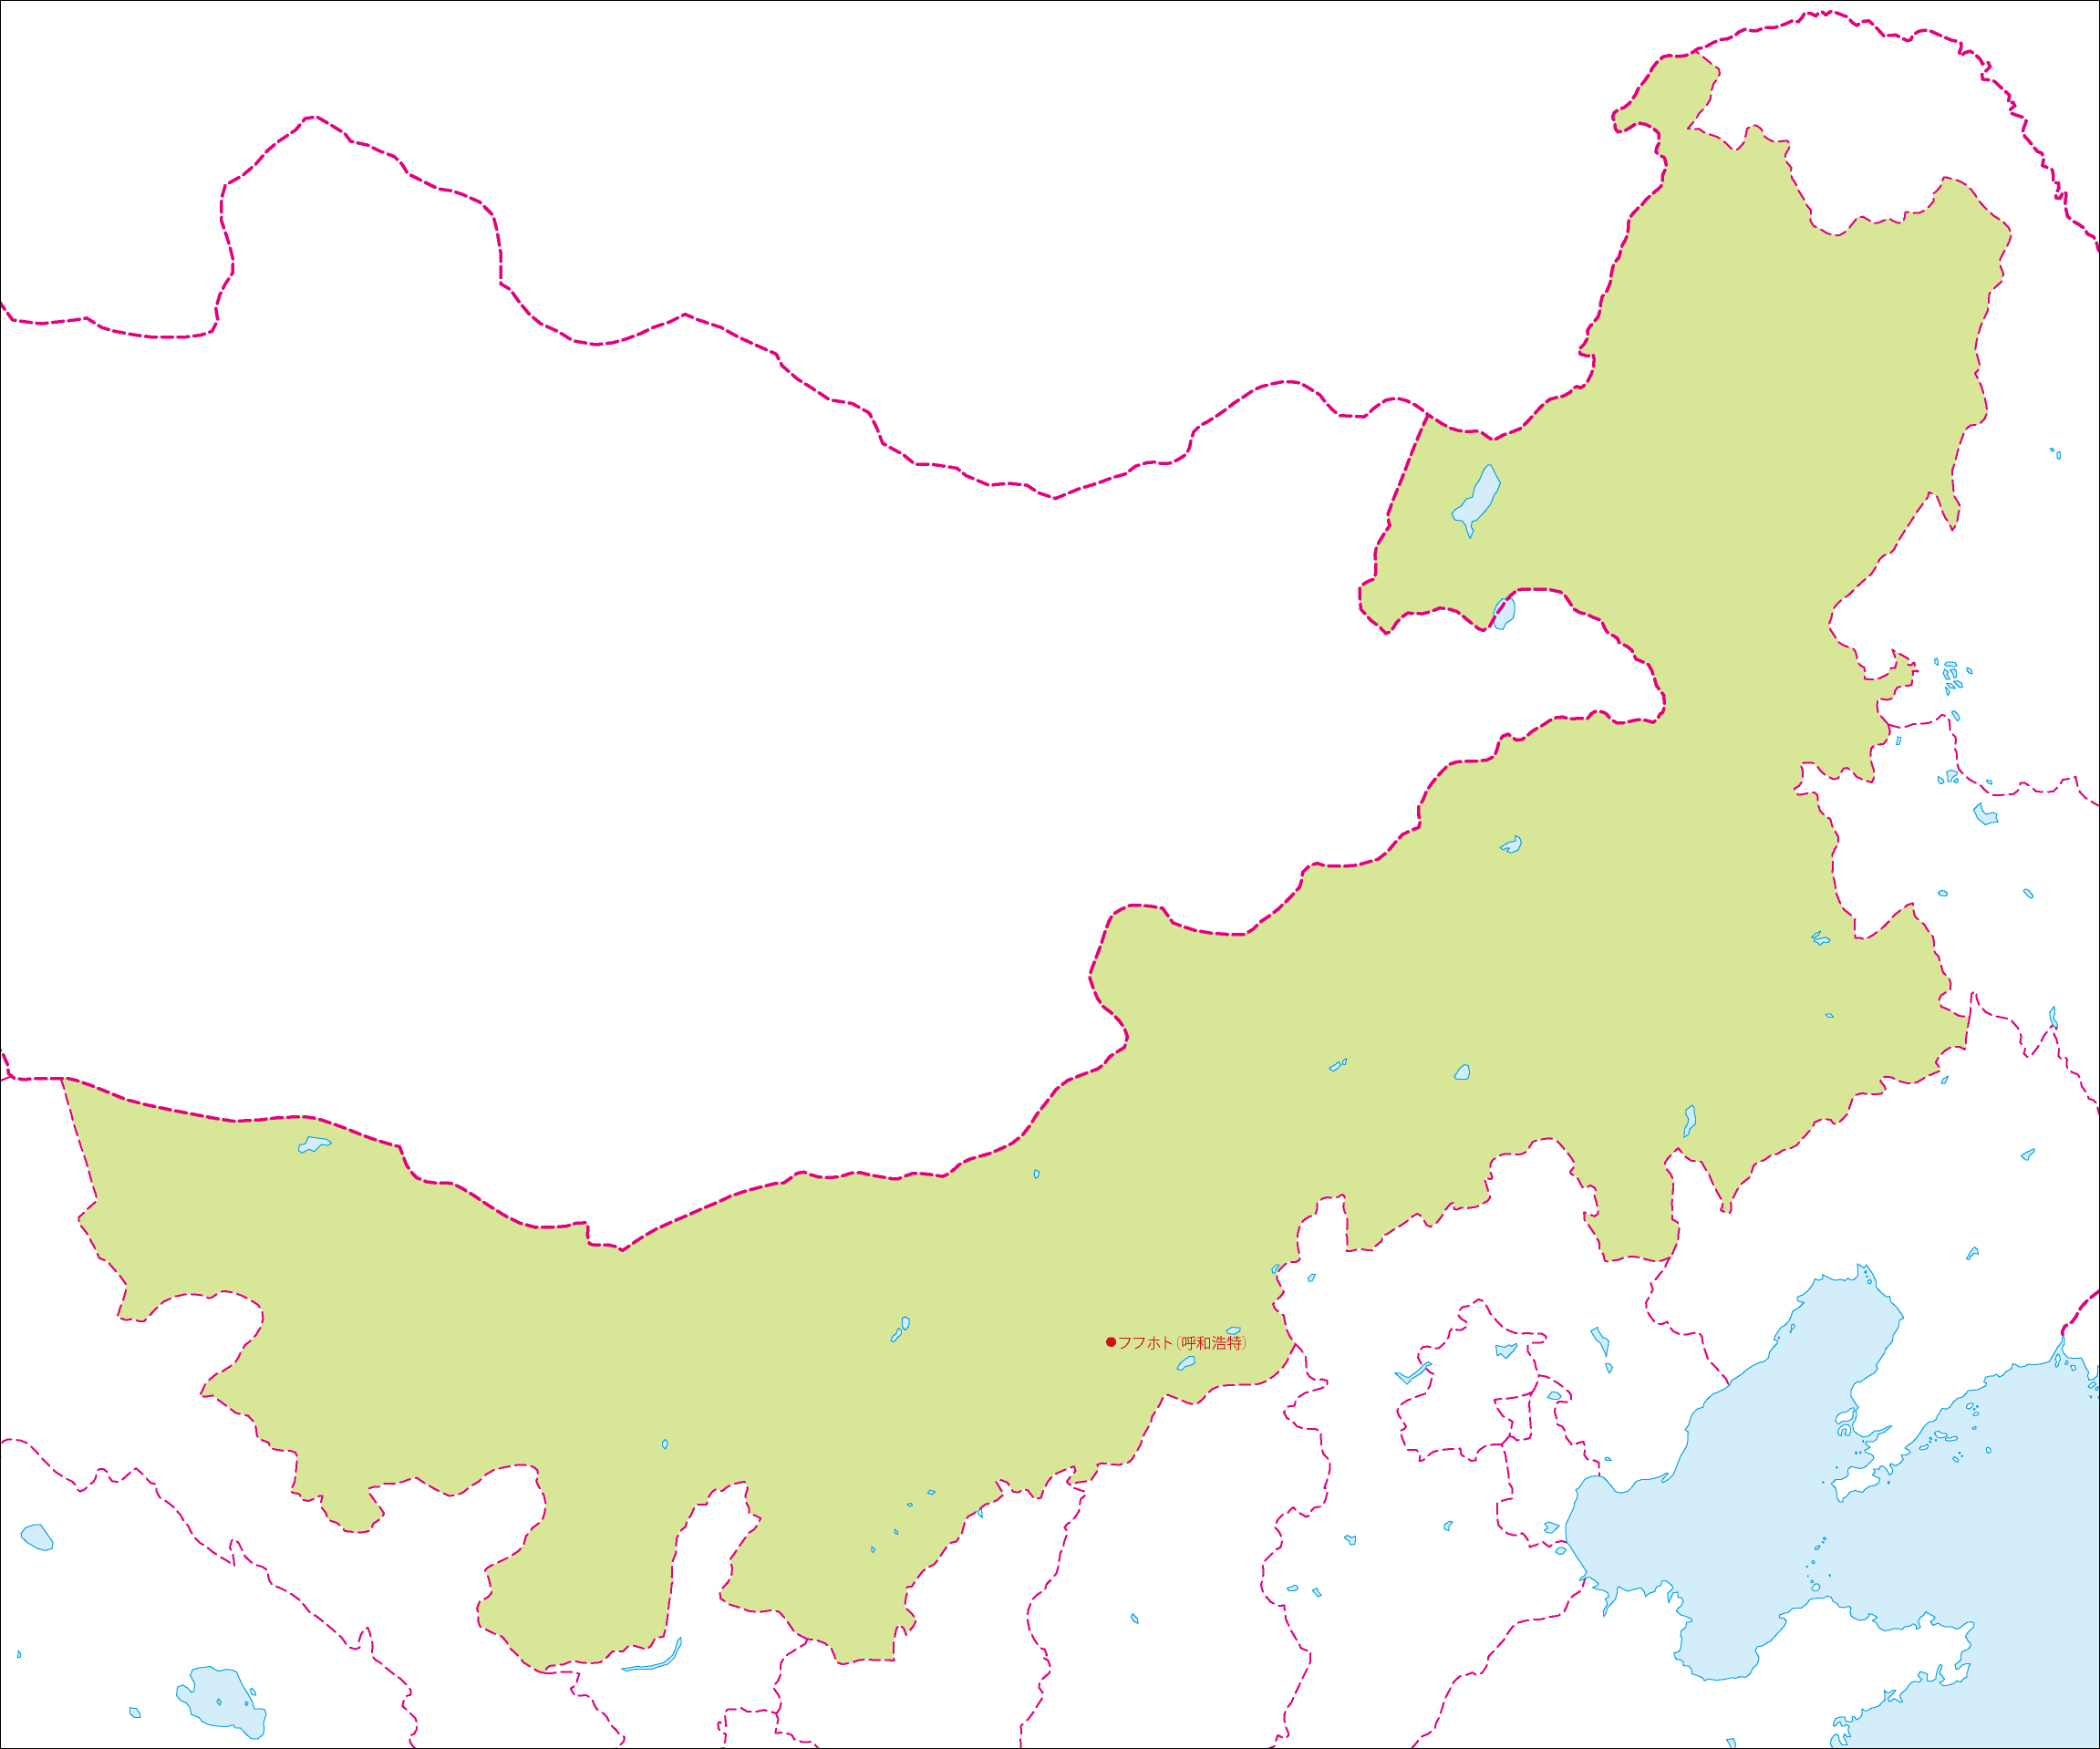 内モンゴル自治区地図(省都あり)のフリーデータの画像